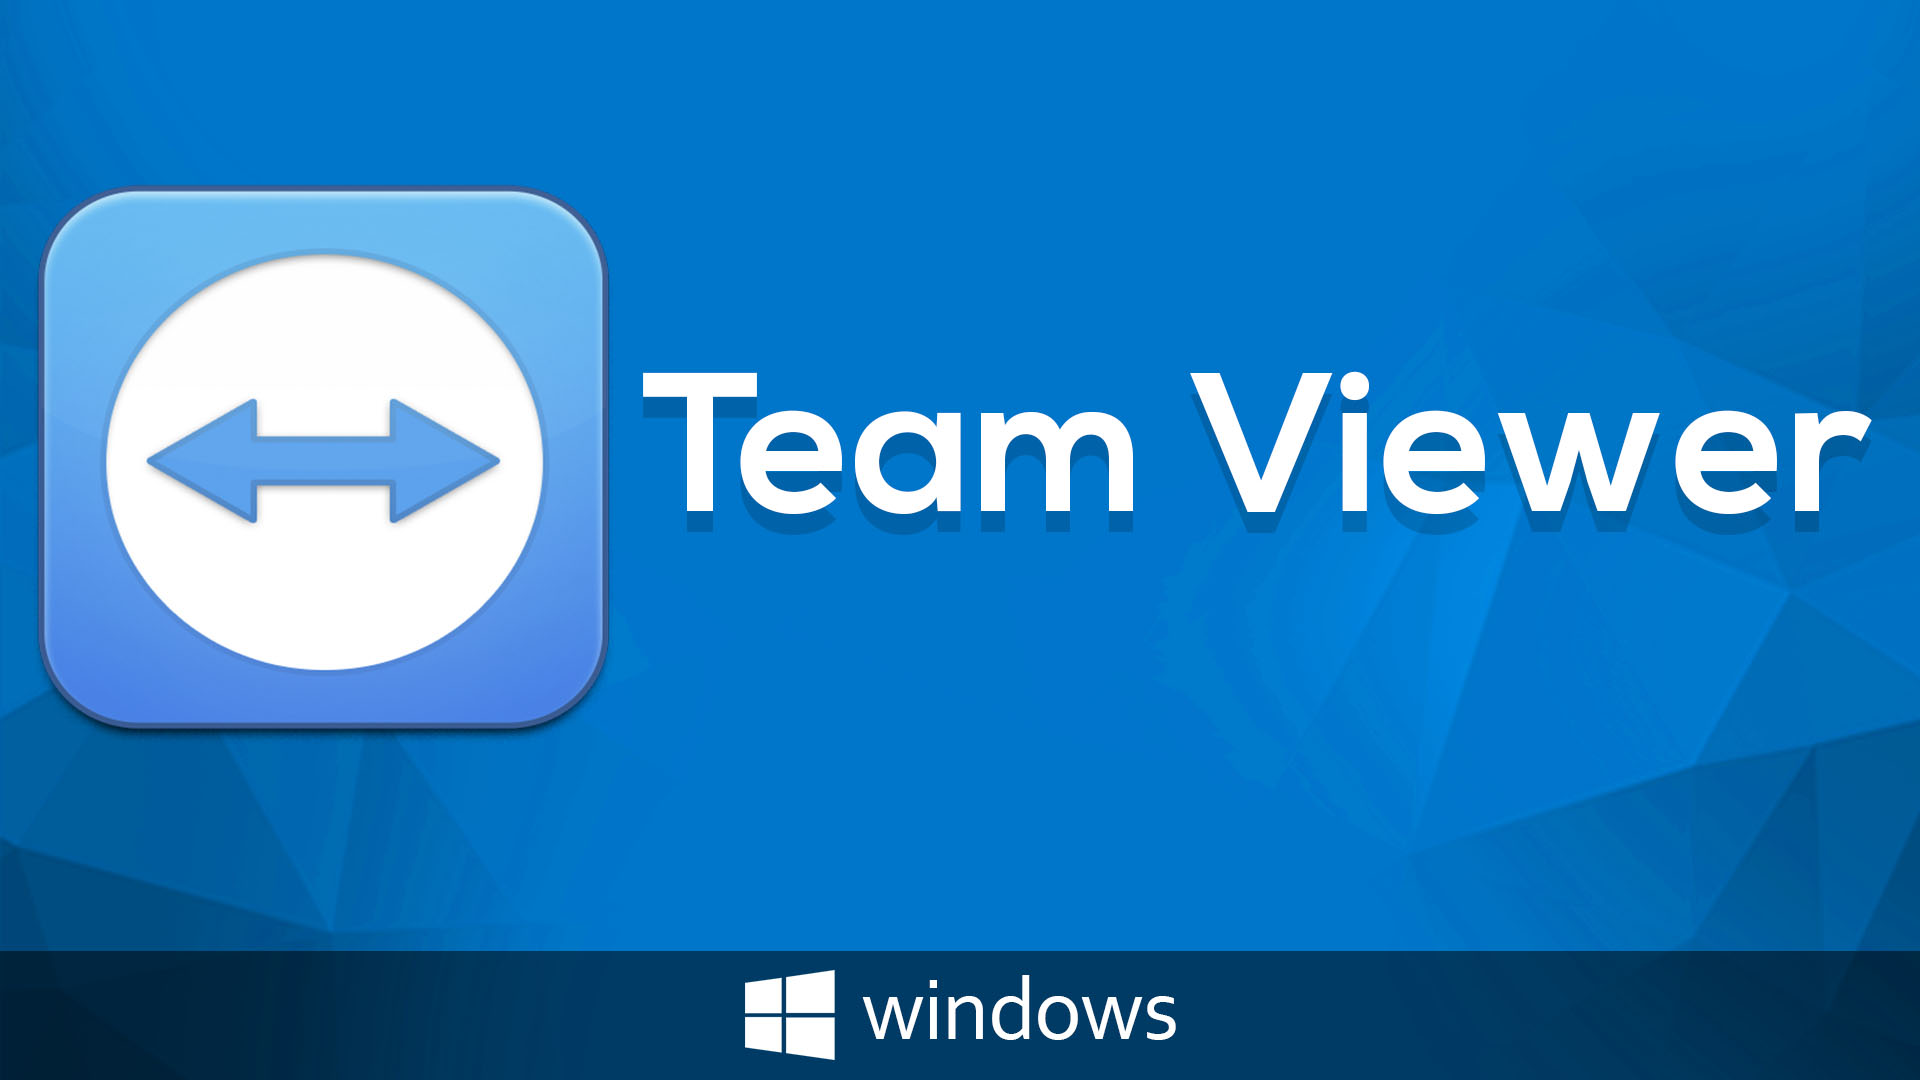 teamviewer 13 download windows 10 64 bit